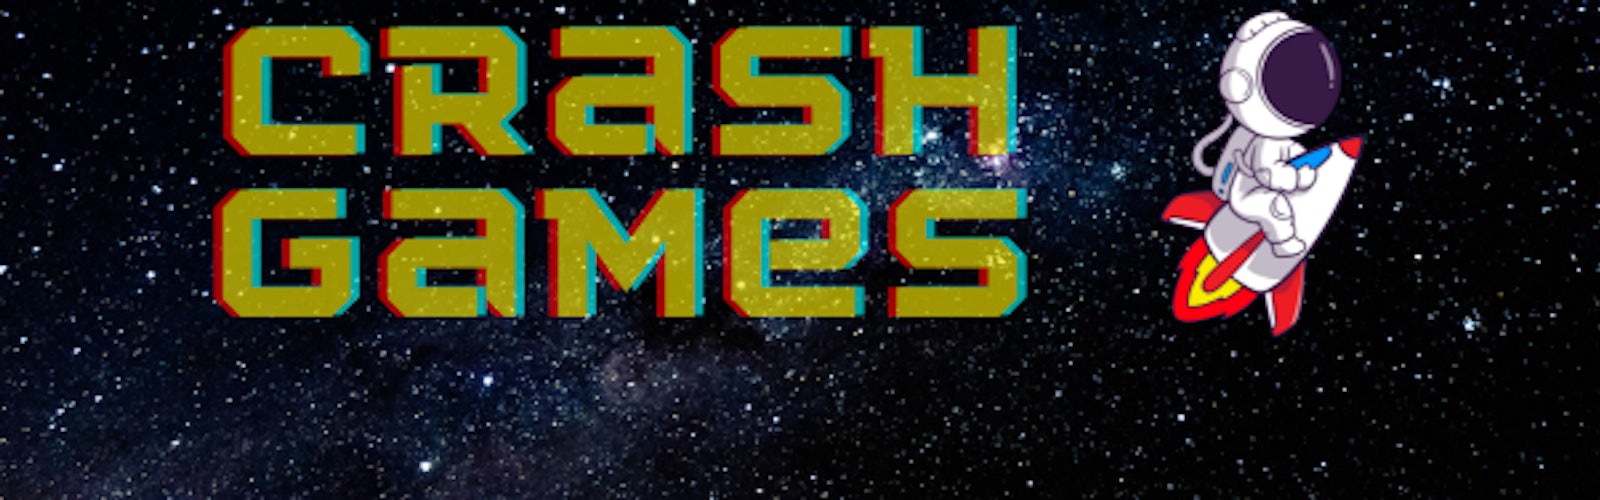 Crash games banner 2